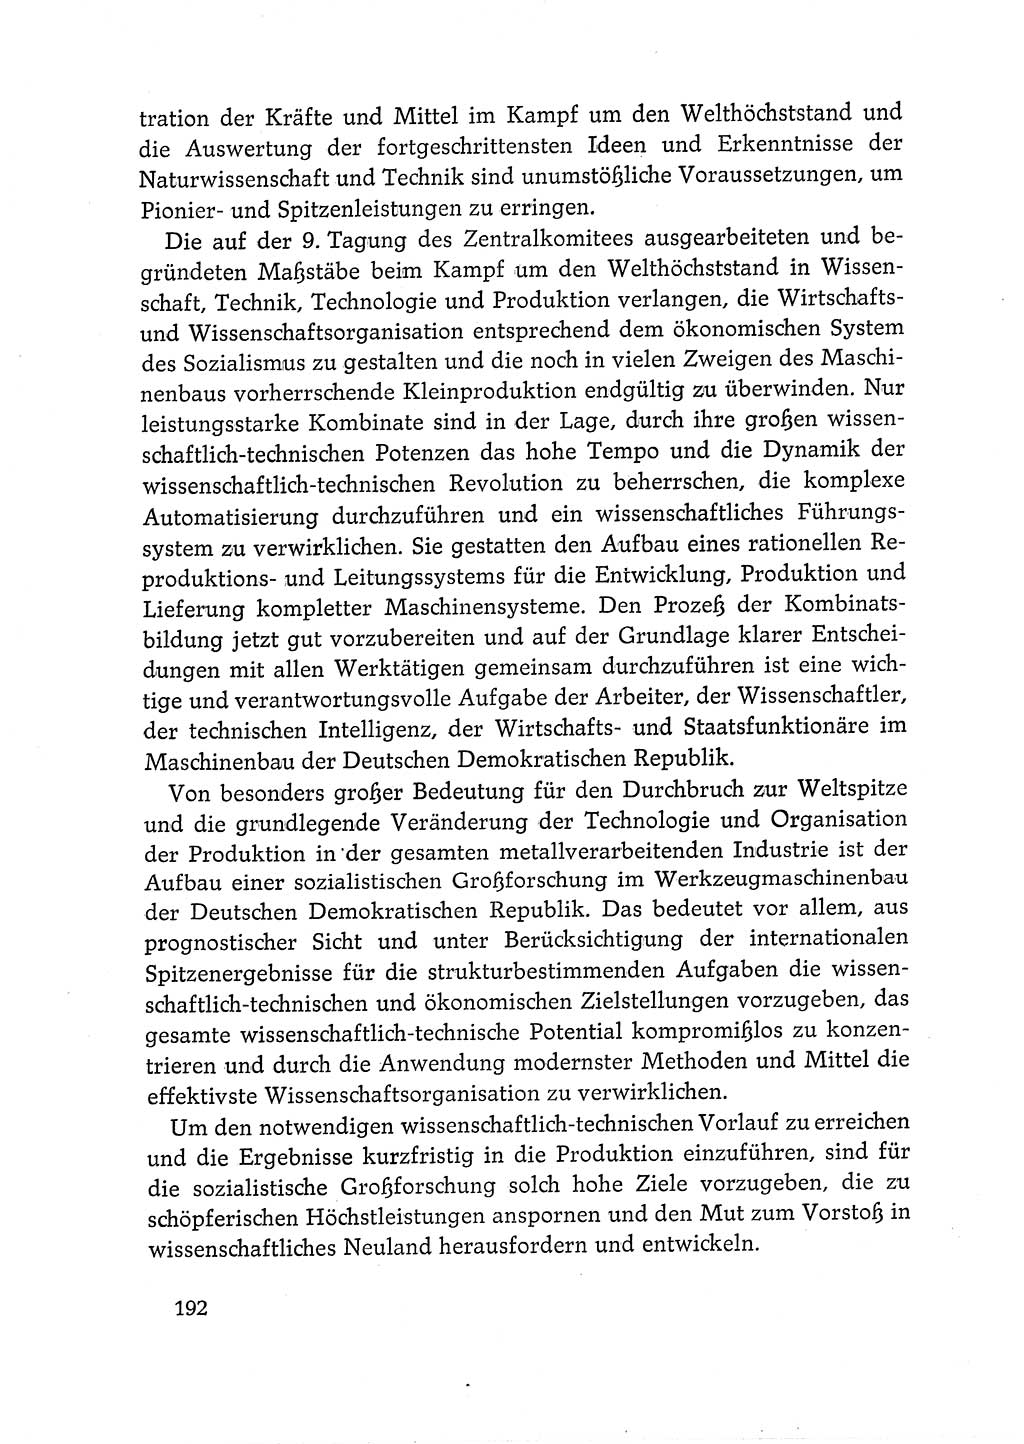 Dokumente der Sozialistischen Einheitspartei Deutschlands (SED) [Deutsche Demokratische Republik (DDR)] 1968-1969, Seite 192 (Dok. SED DDR 1968-1969, S. 192)